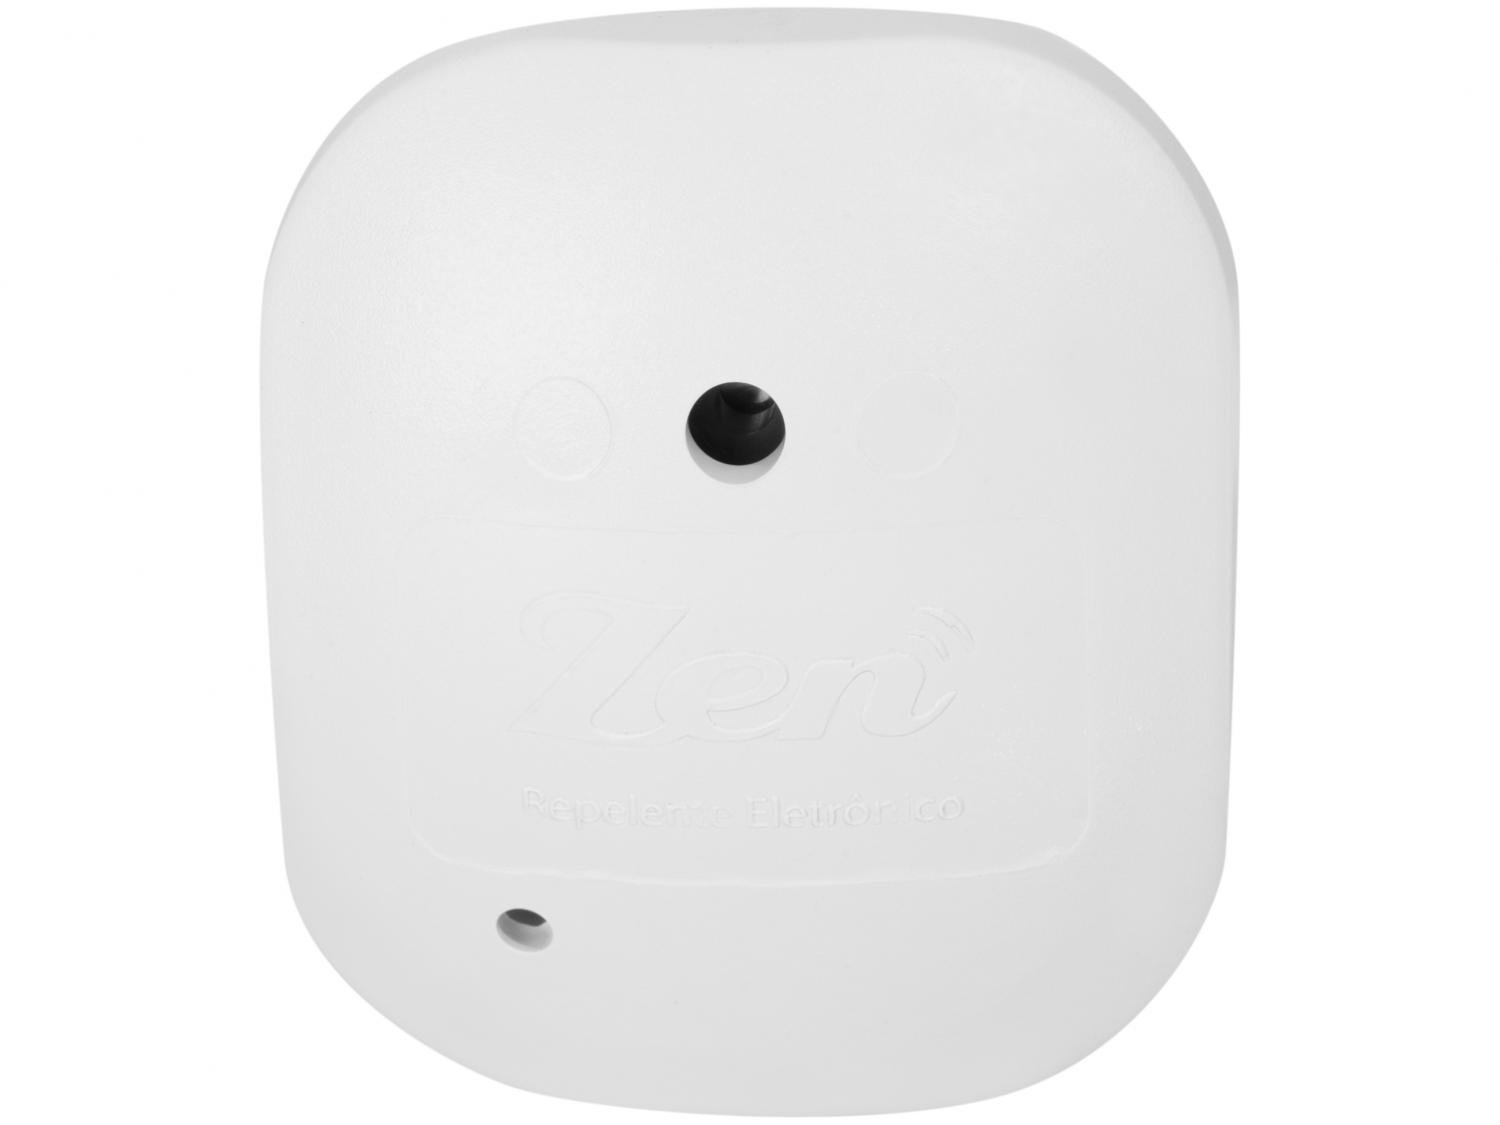 Repelente Eletrônico Branco Zen ON Eletrônicos Indicado para Repelir Pernilongos, Mosquitos, Ratos e Morcegos em Ambientes de até 30m² - 1